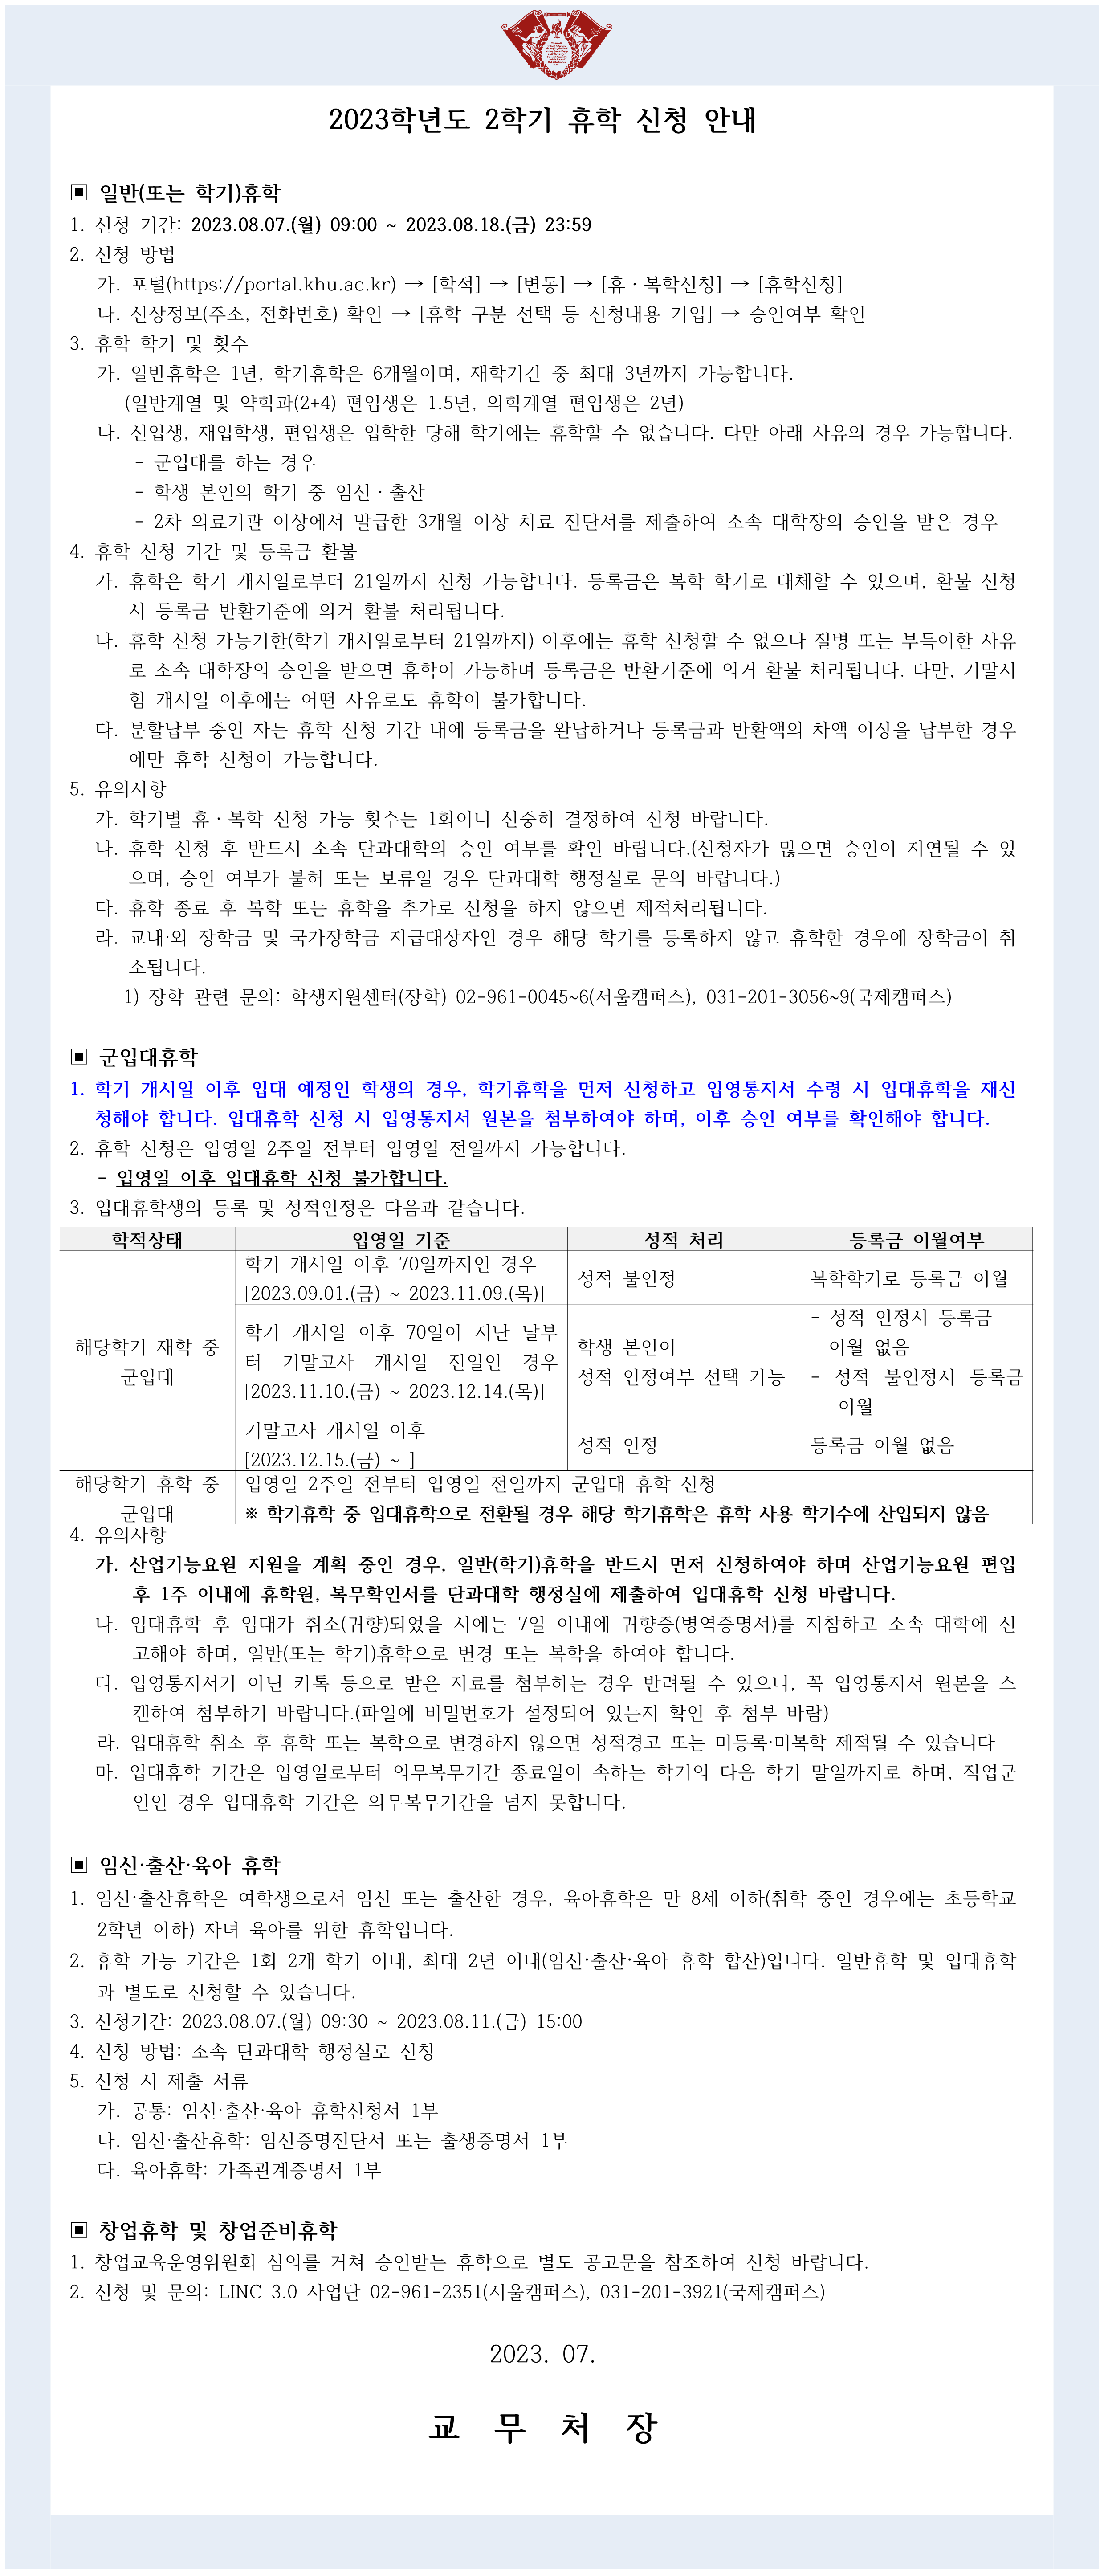 2023-2학기 휴학신청 안내문_1.png